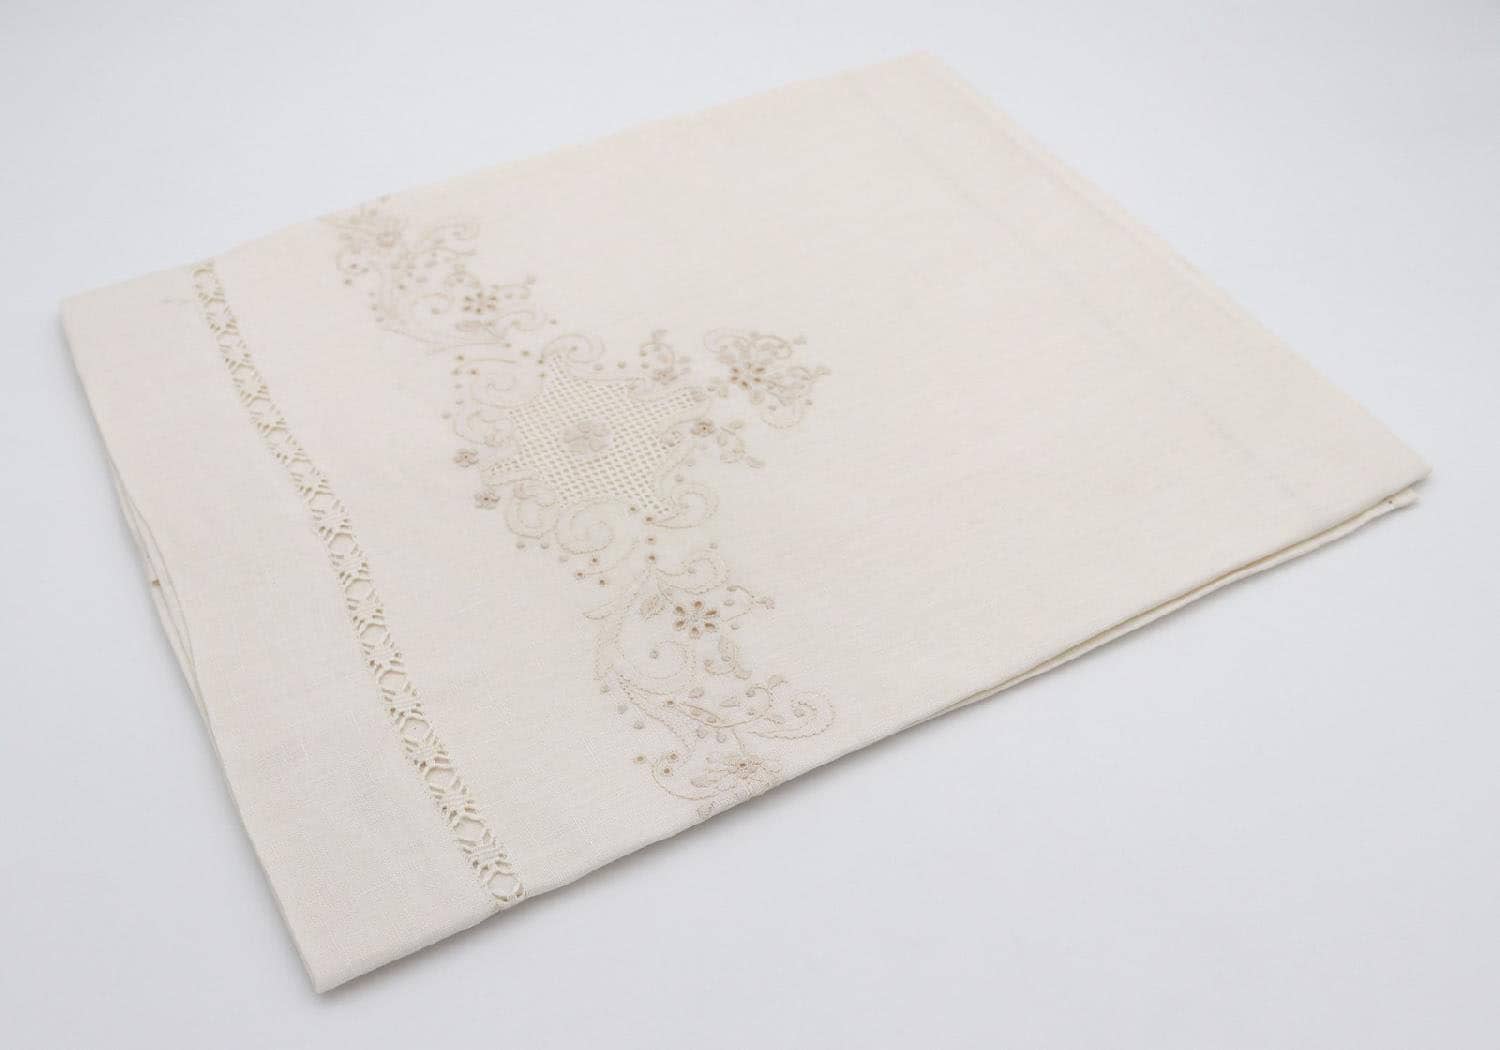 blanco gfl054 asciugamani bagno set 1+1 in puro lino ricamo a mano motivo arabesco e sfilato punto gigliuccio colore ecrù - nb1444